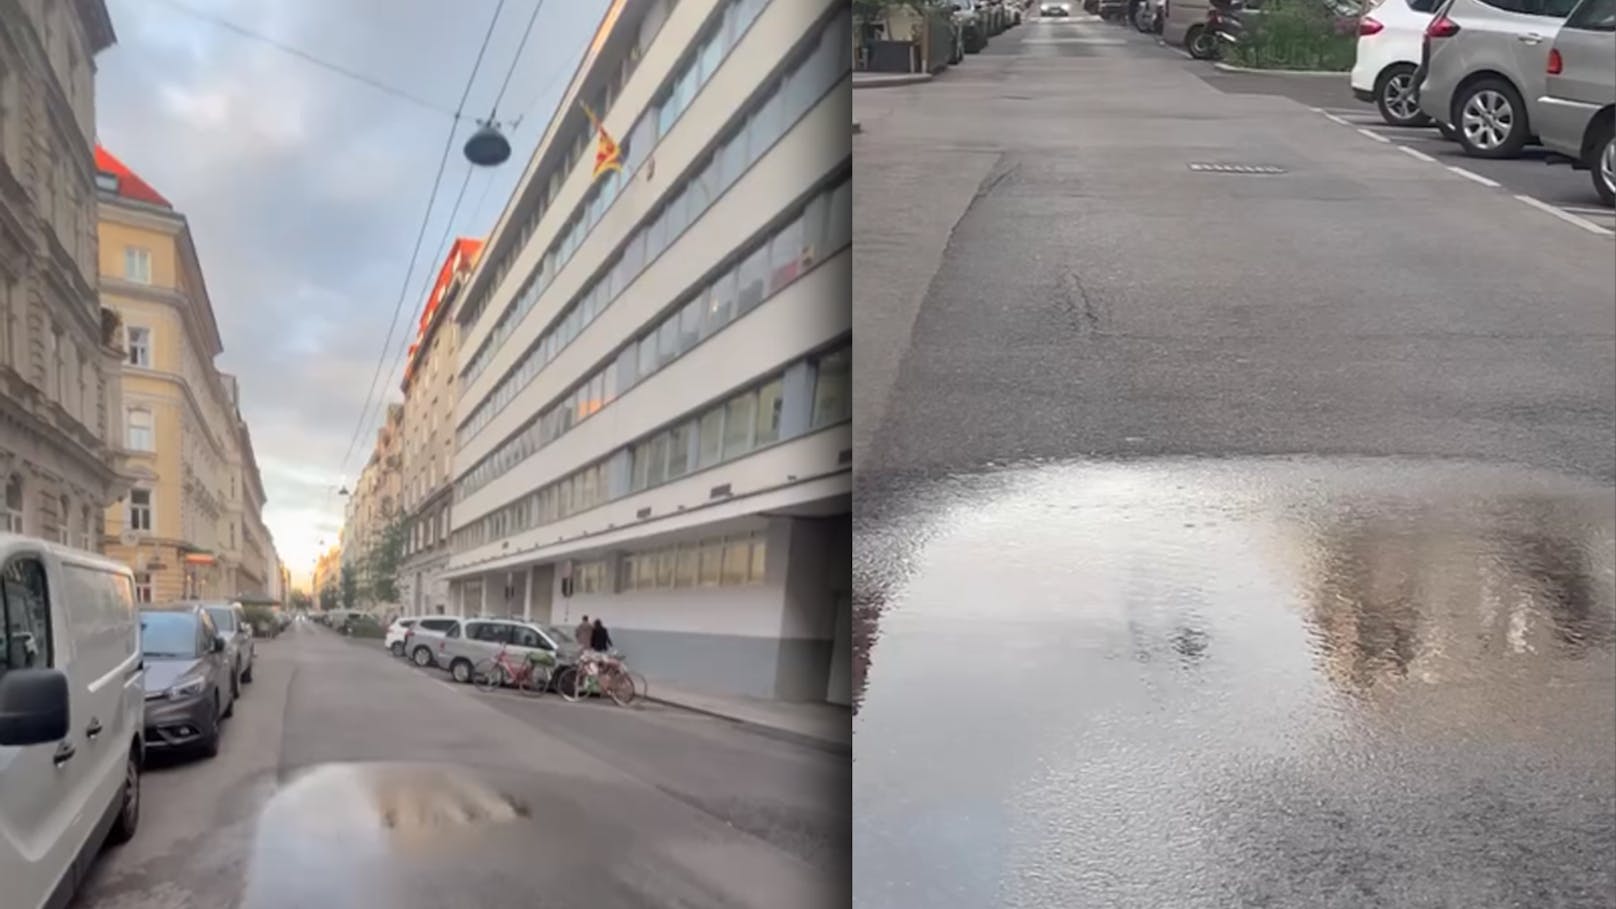 "Regnet nur an einer Stelle" – Kurioser Vorfall in Wien